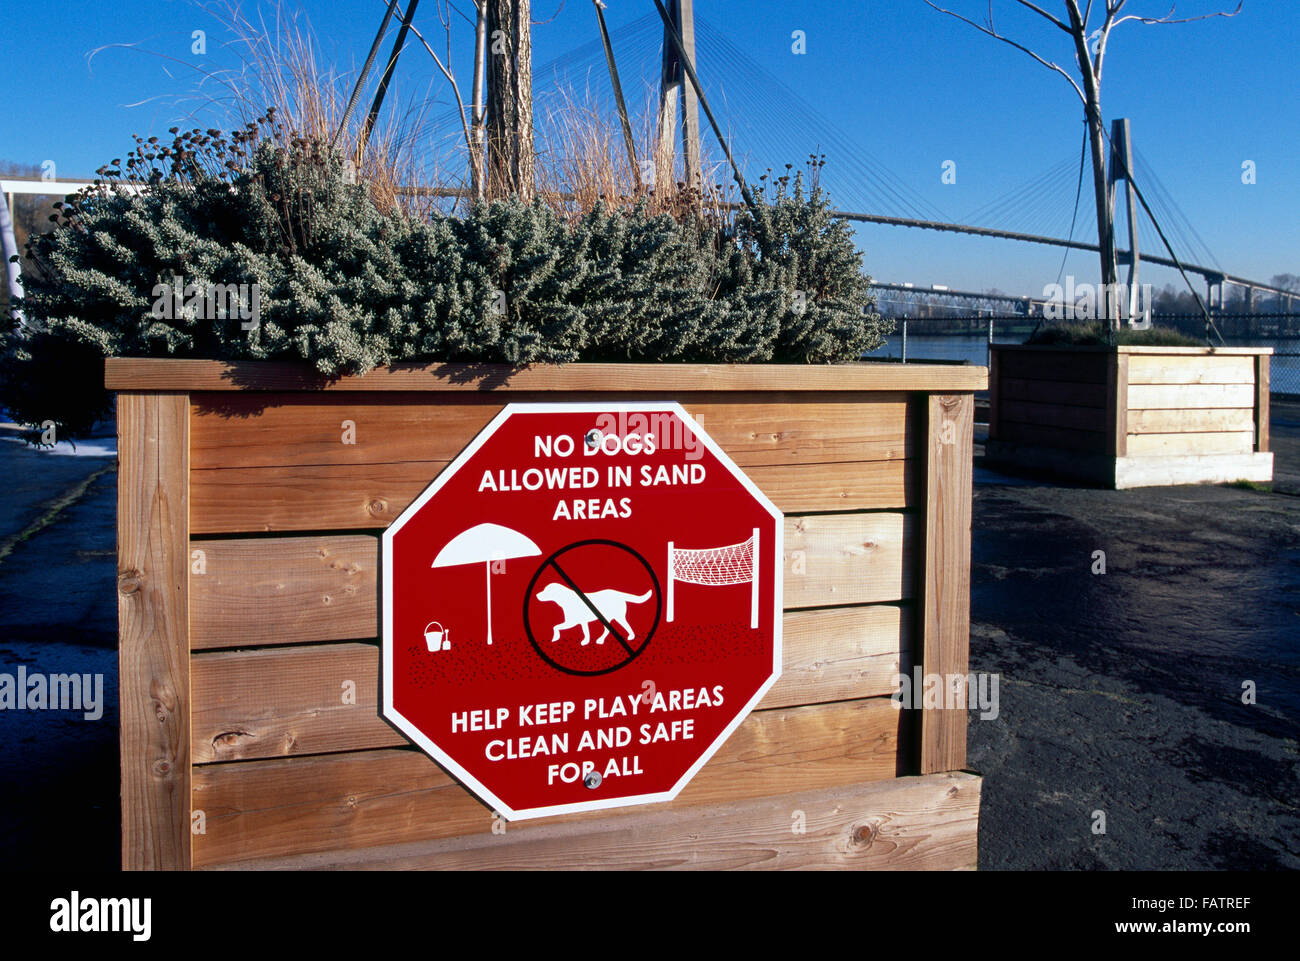 No se admiten perros en las zonas de arena firme, Westminster Pier Park, New Westminster, British Columbia, Canadá - Información de Control de perros Foto de stock